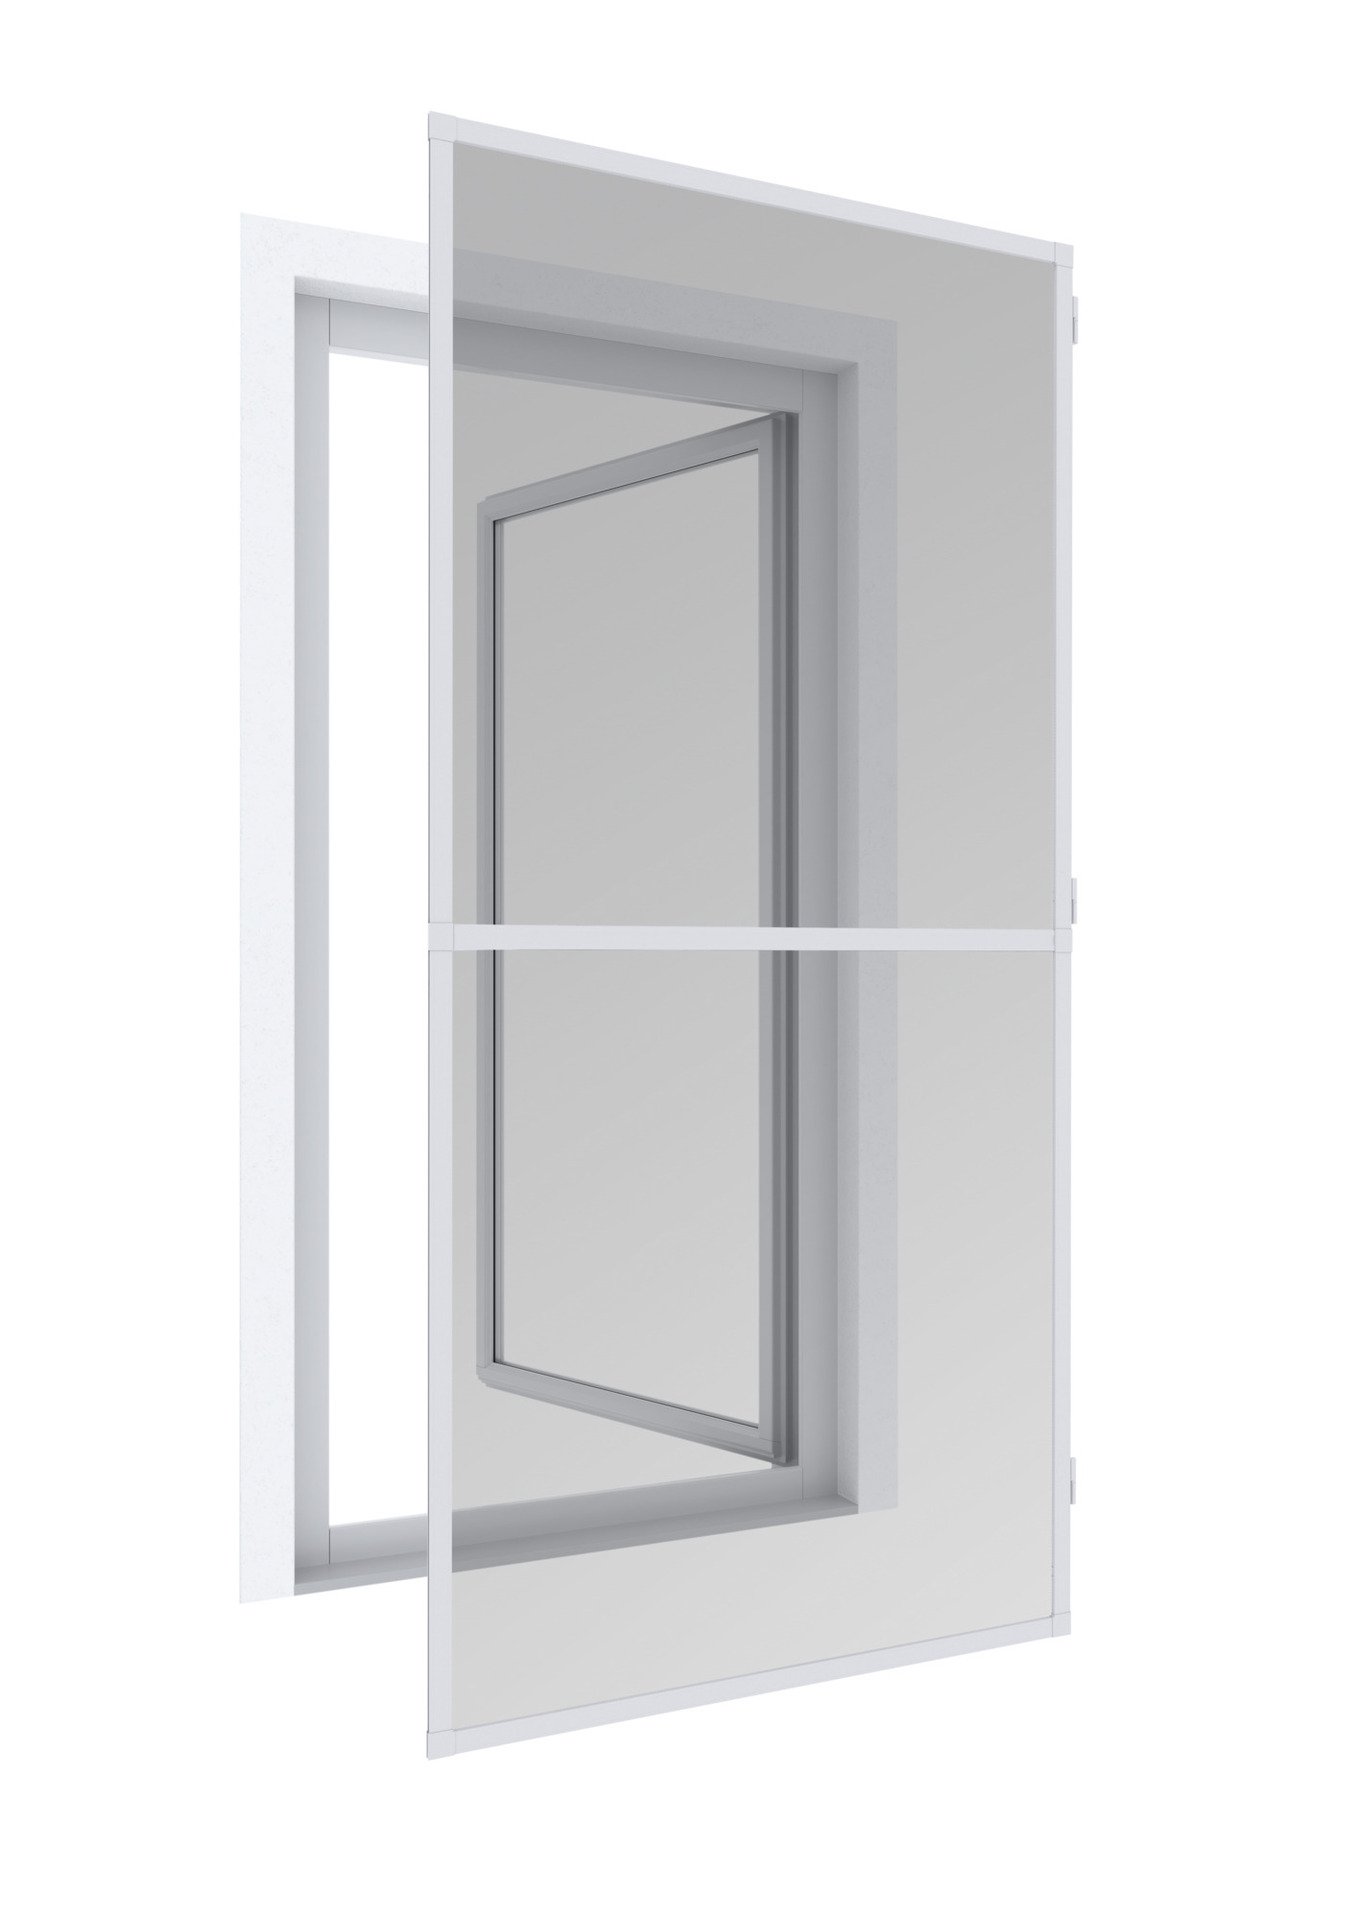 Tesa Dichtband für Tür u. Fenster, 6 m, 9 mm breit - Breite: 9mm -  Leitermann